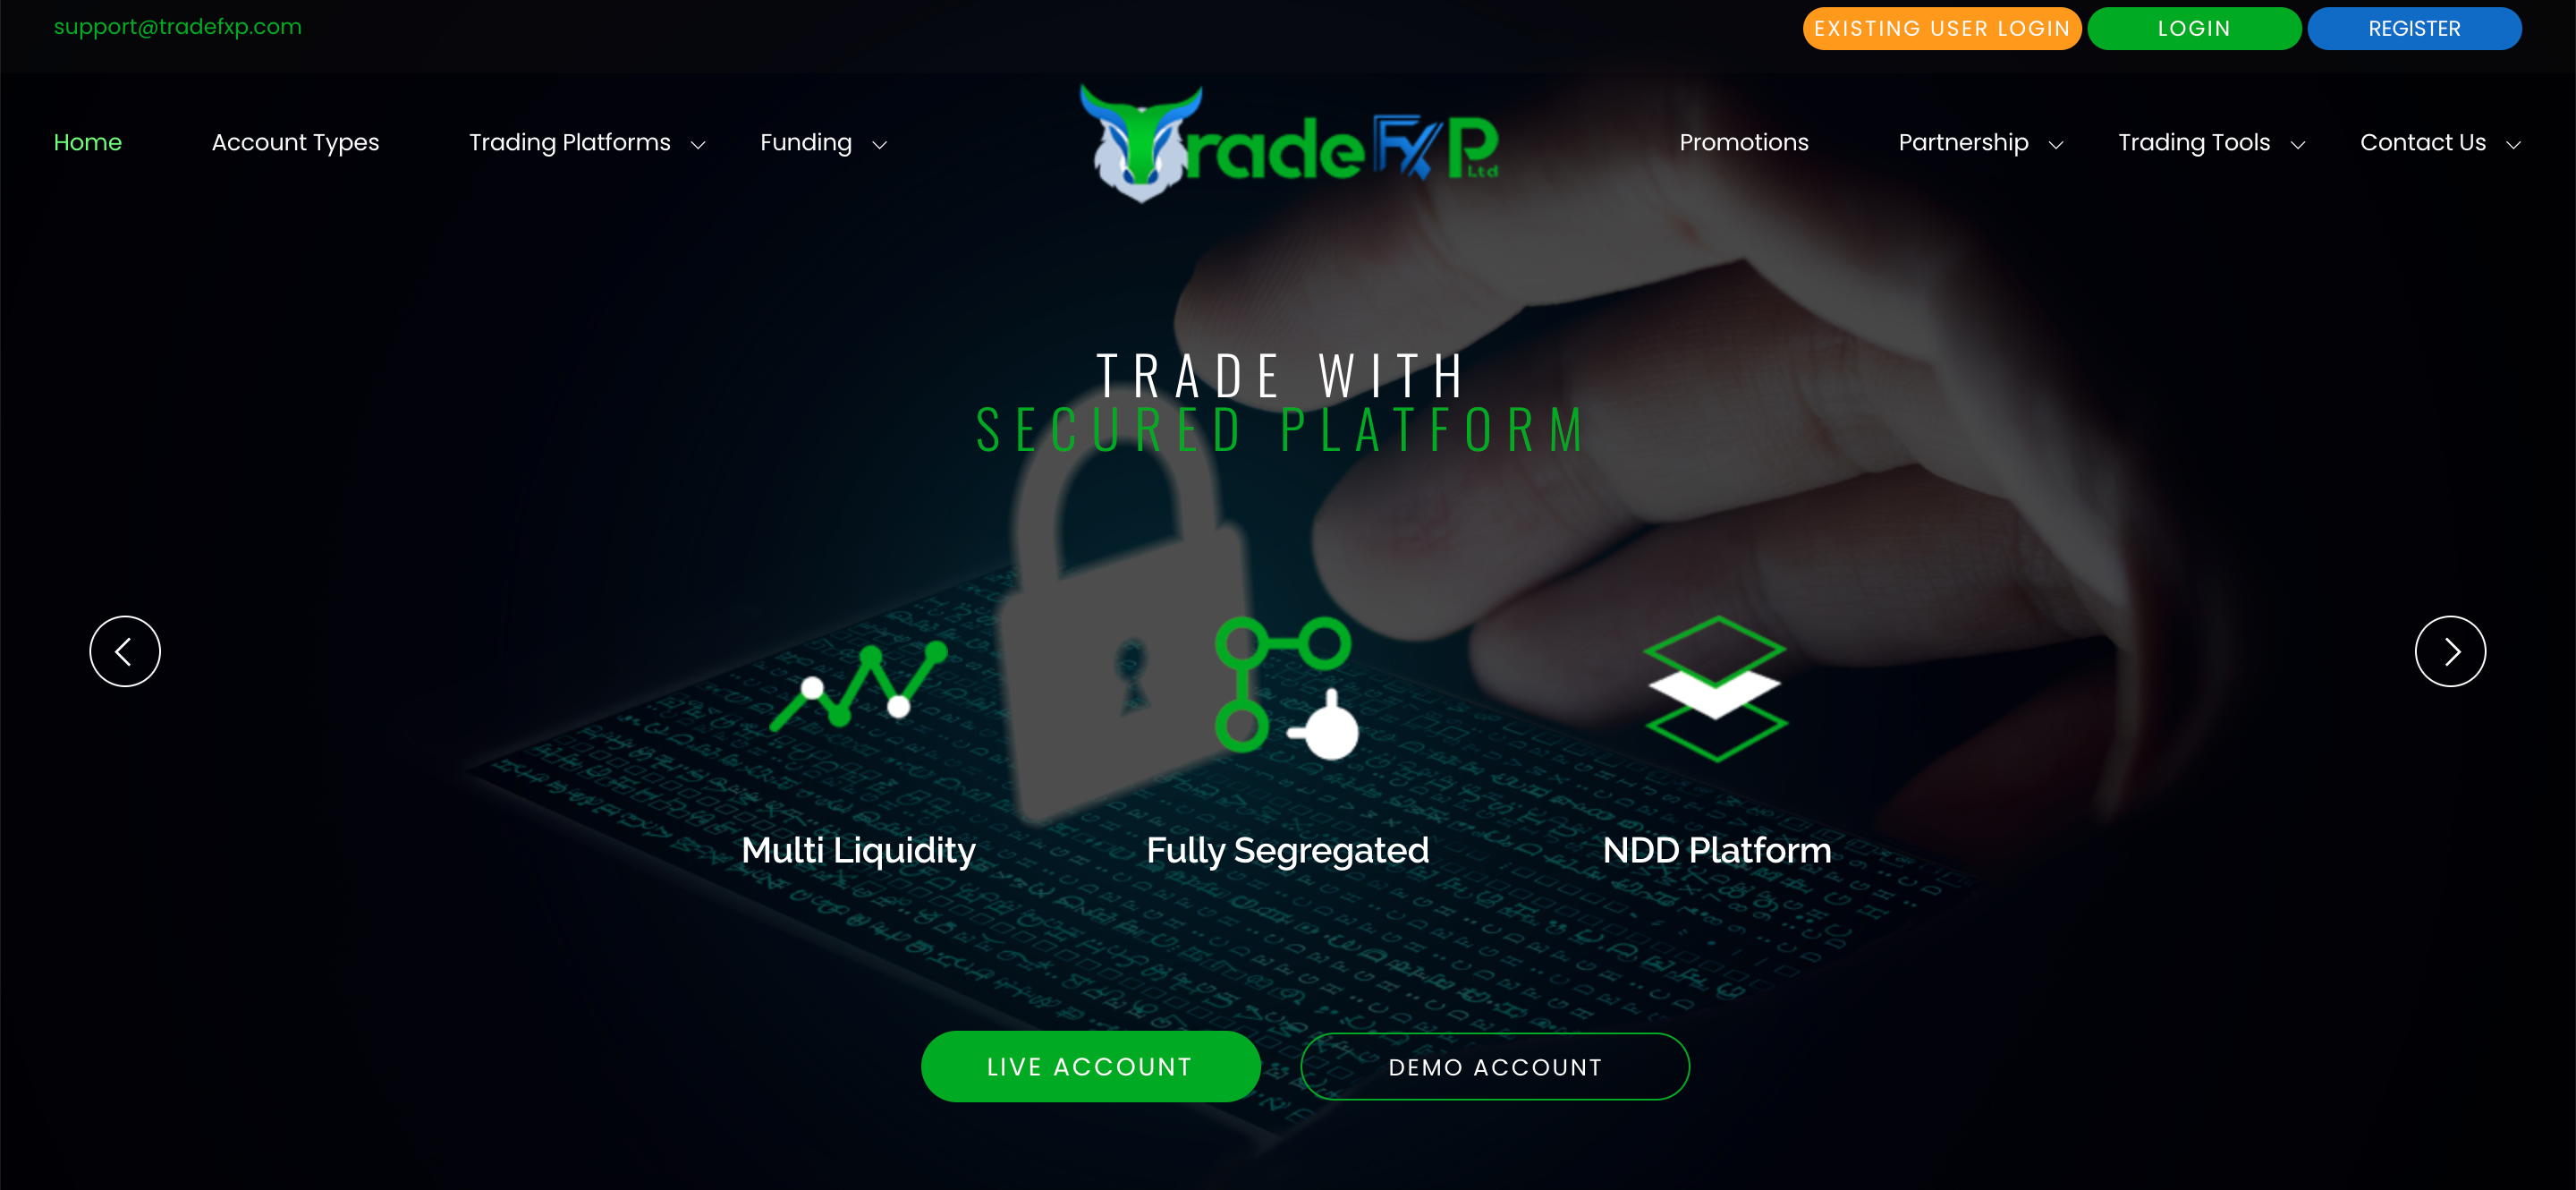 Trade FxP website